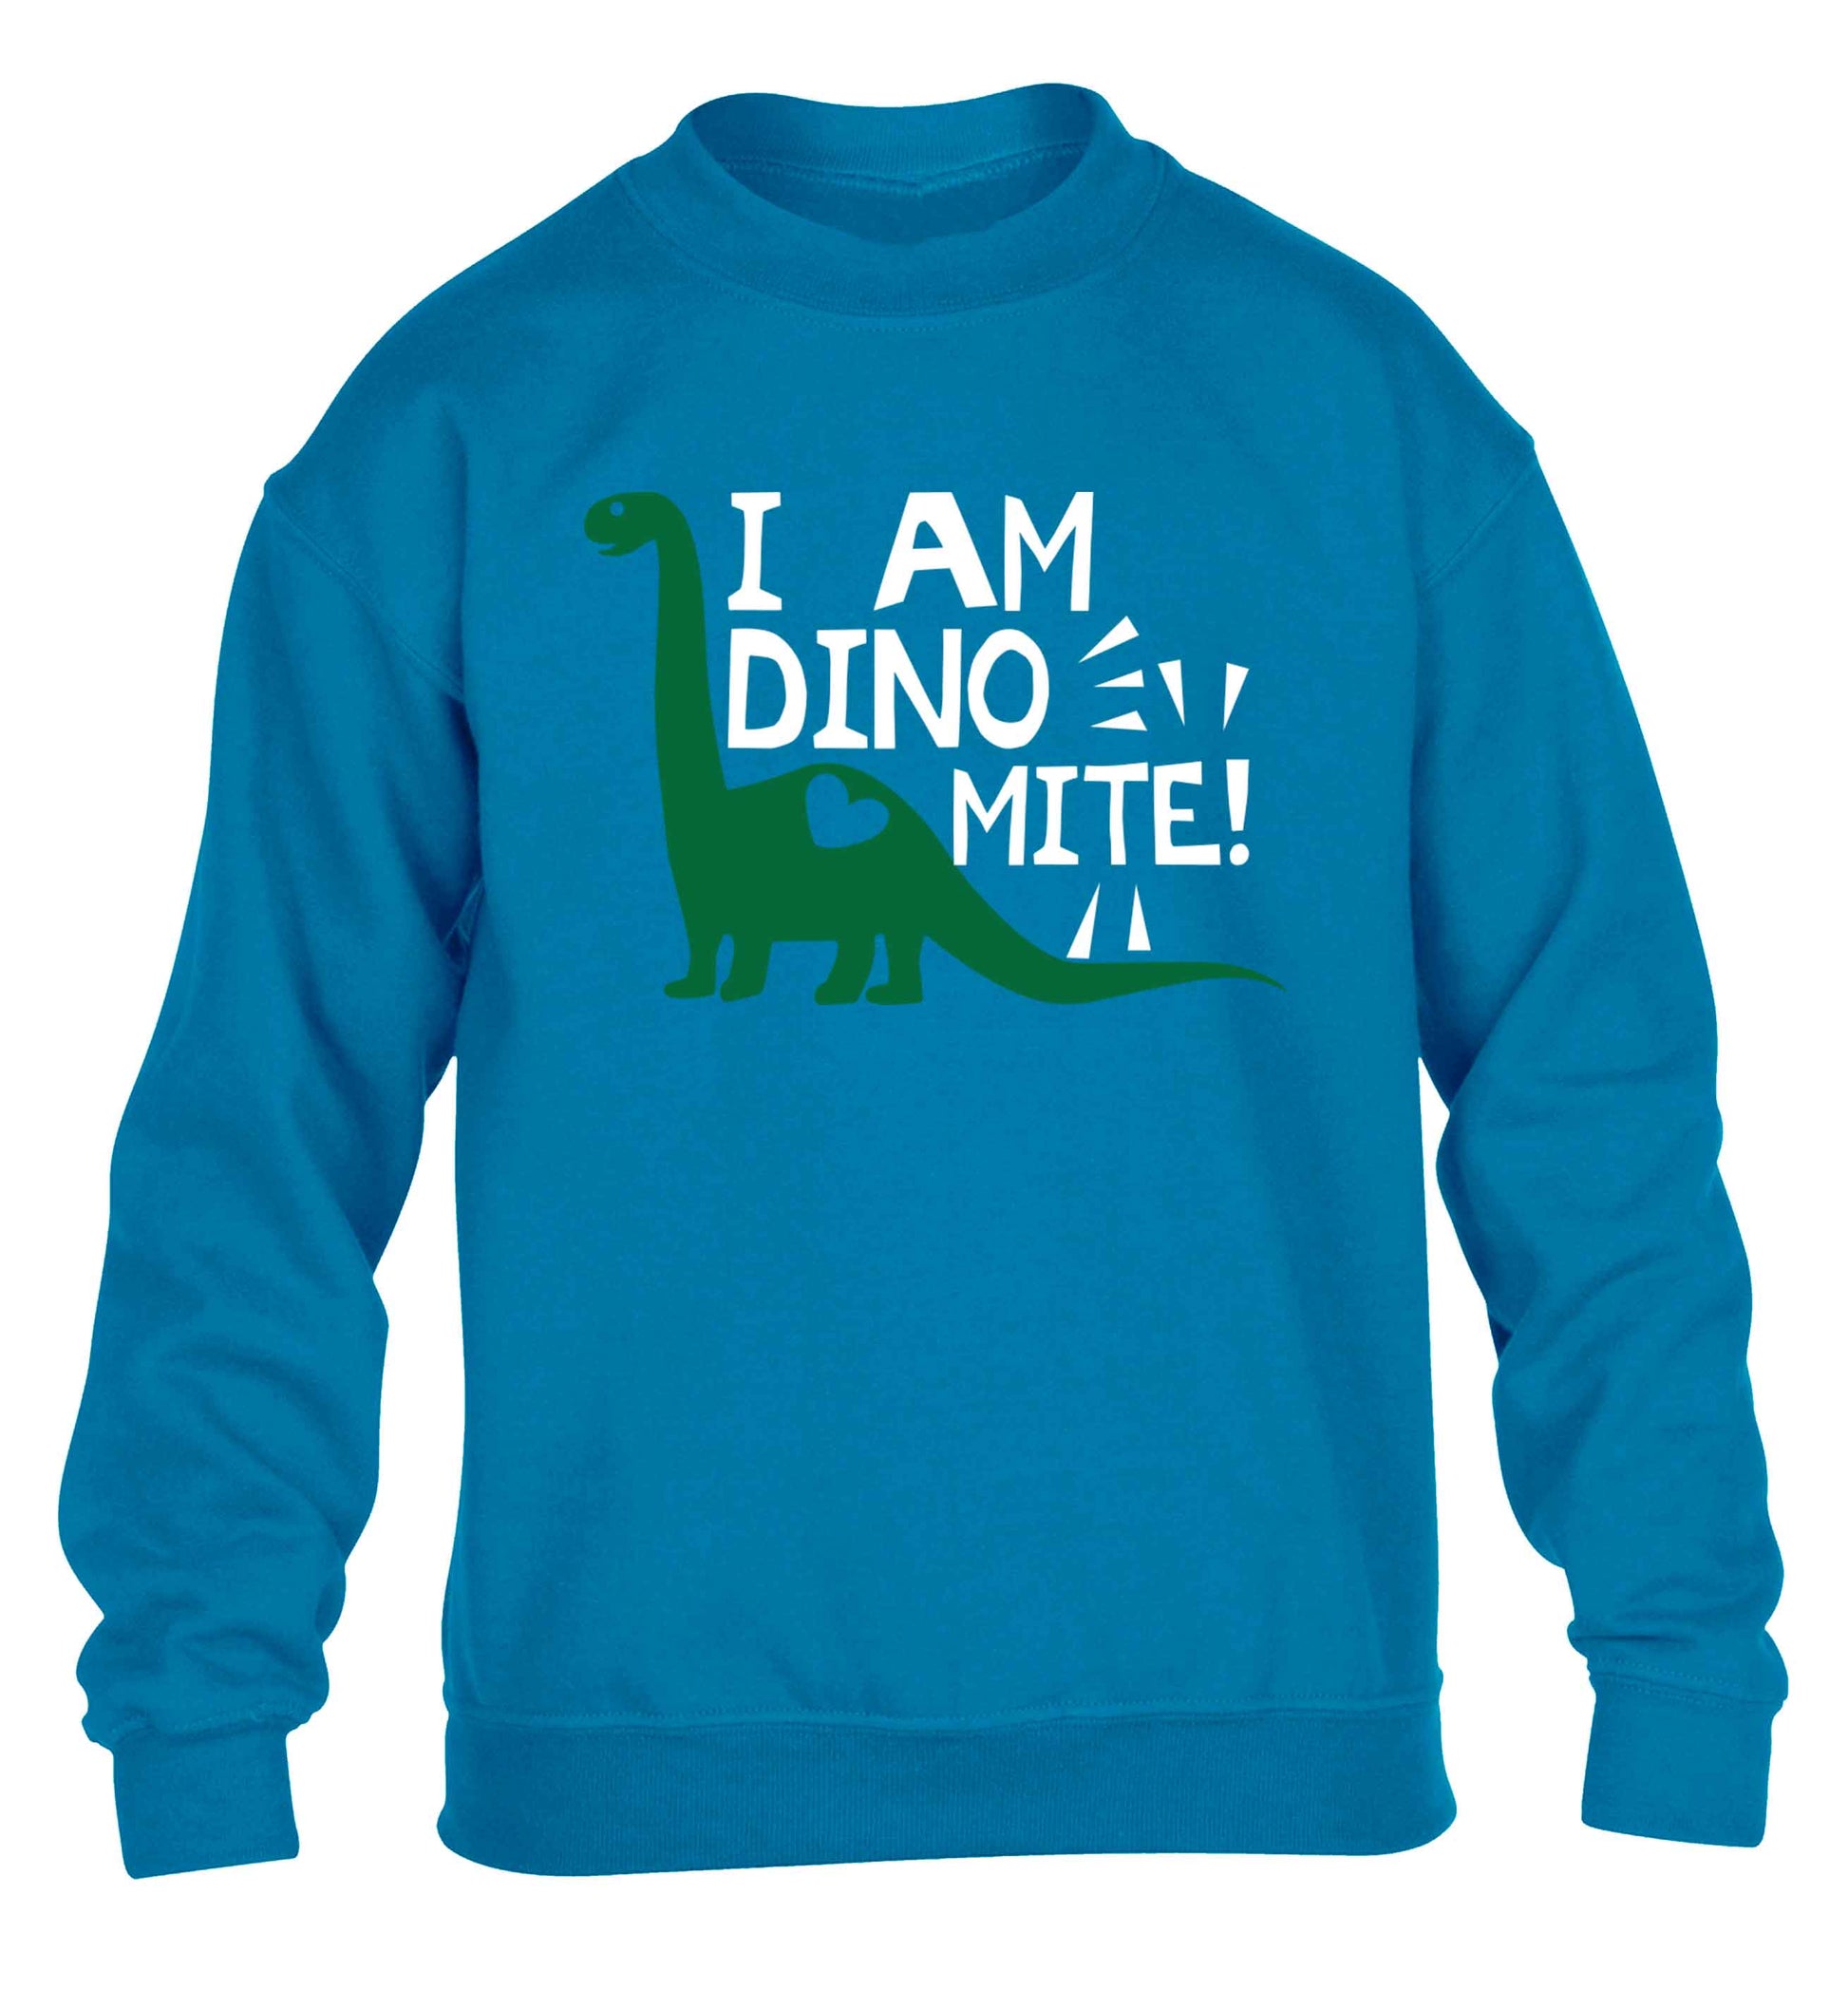 I am dinomite! children's blue sweater 12-13 Years